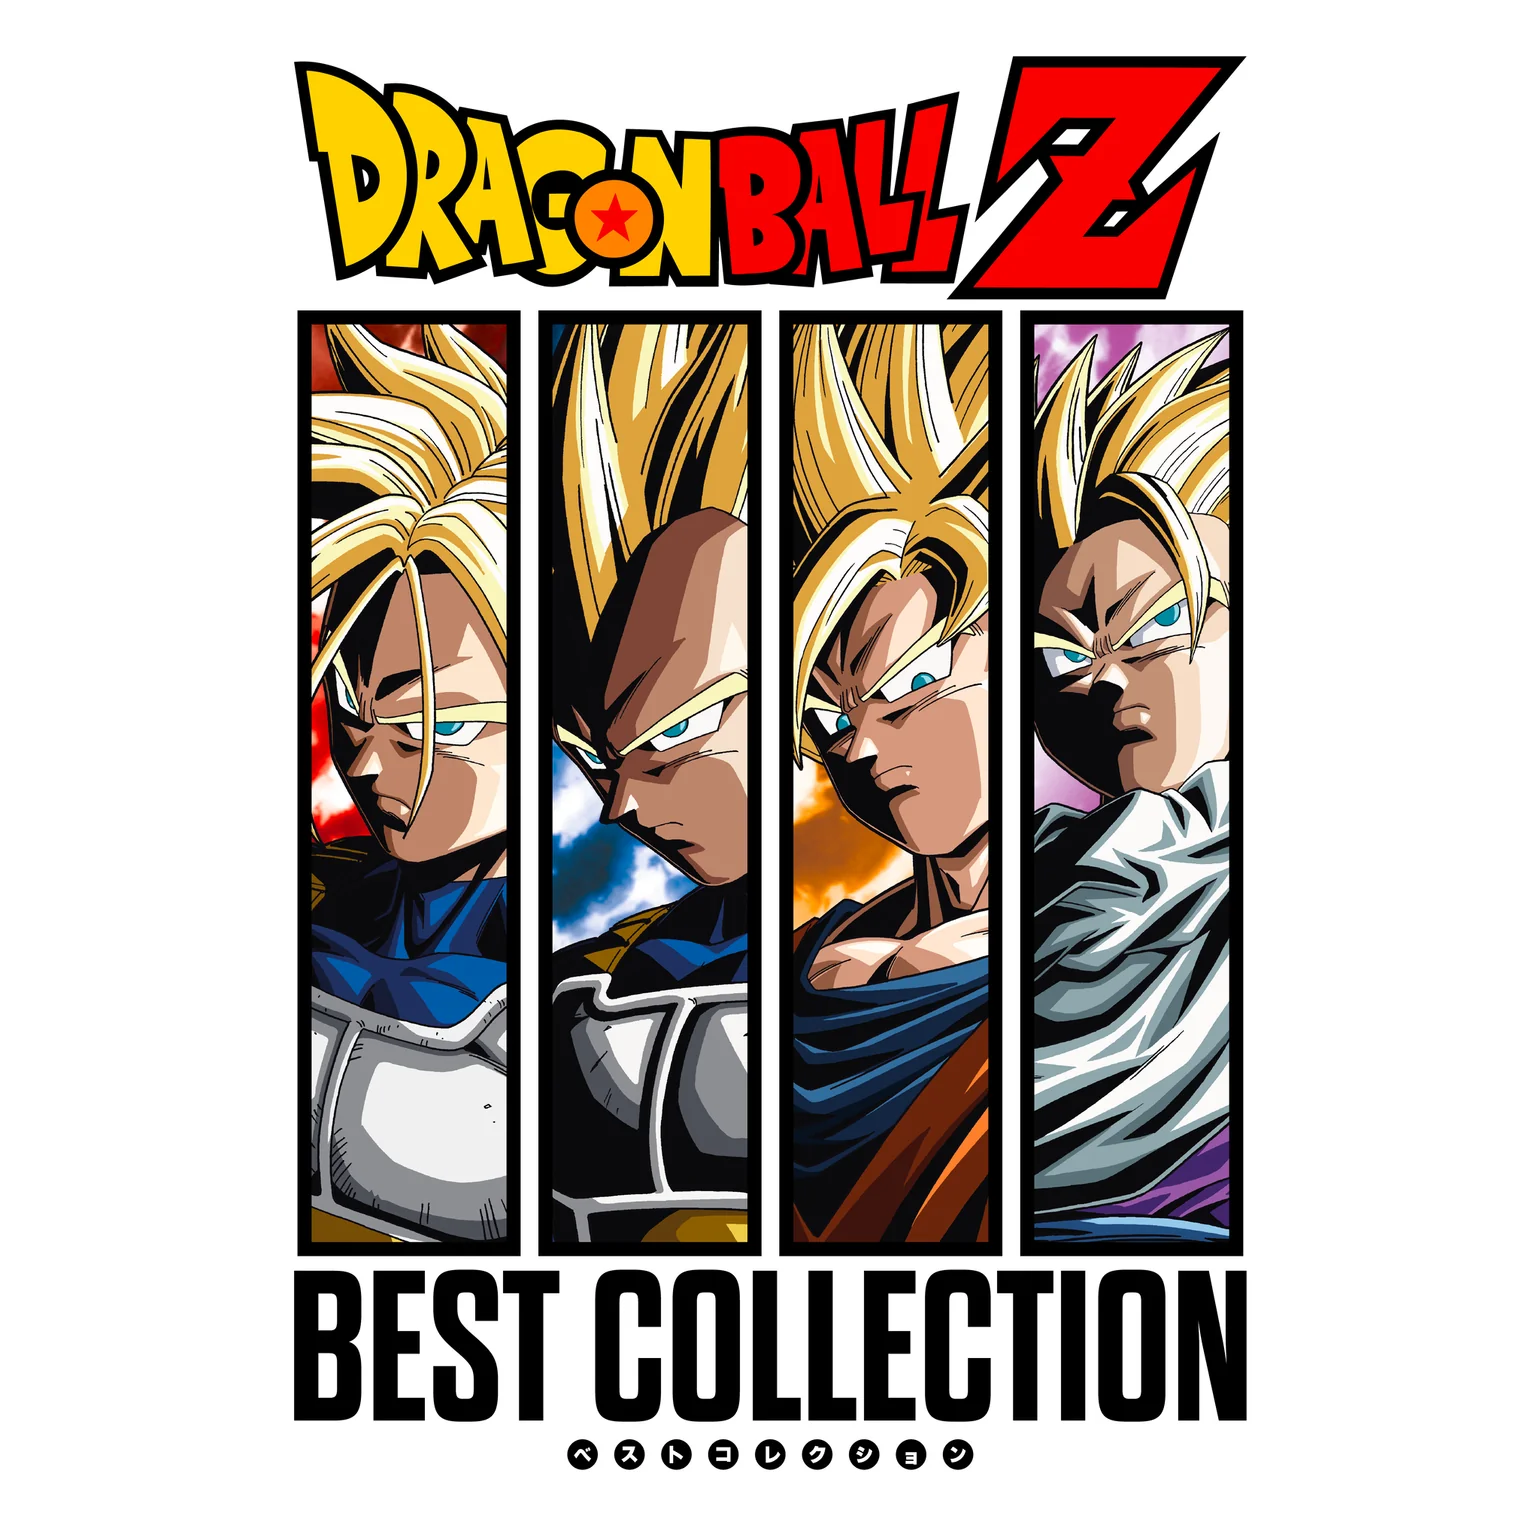 Dragon Ball Z: Best of DVD releases • Kanzenshuu